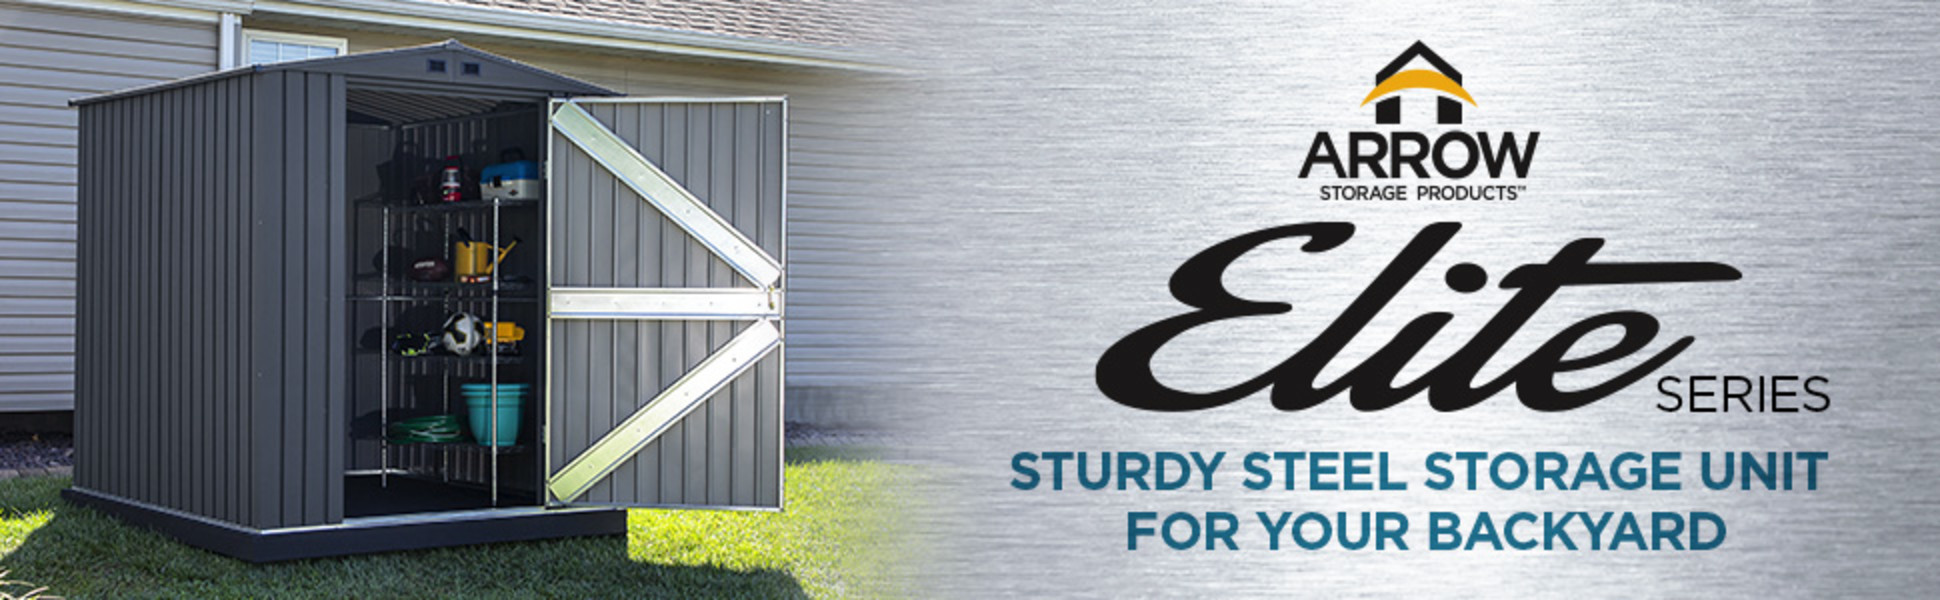 Arrow ELITE - Sturdy Steel Storage Unit for Your Backyard